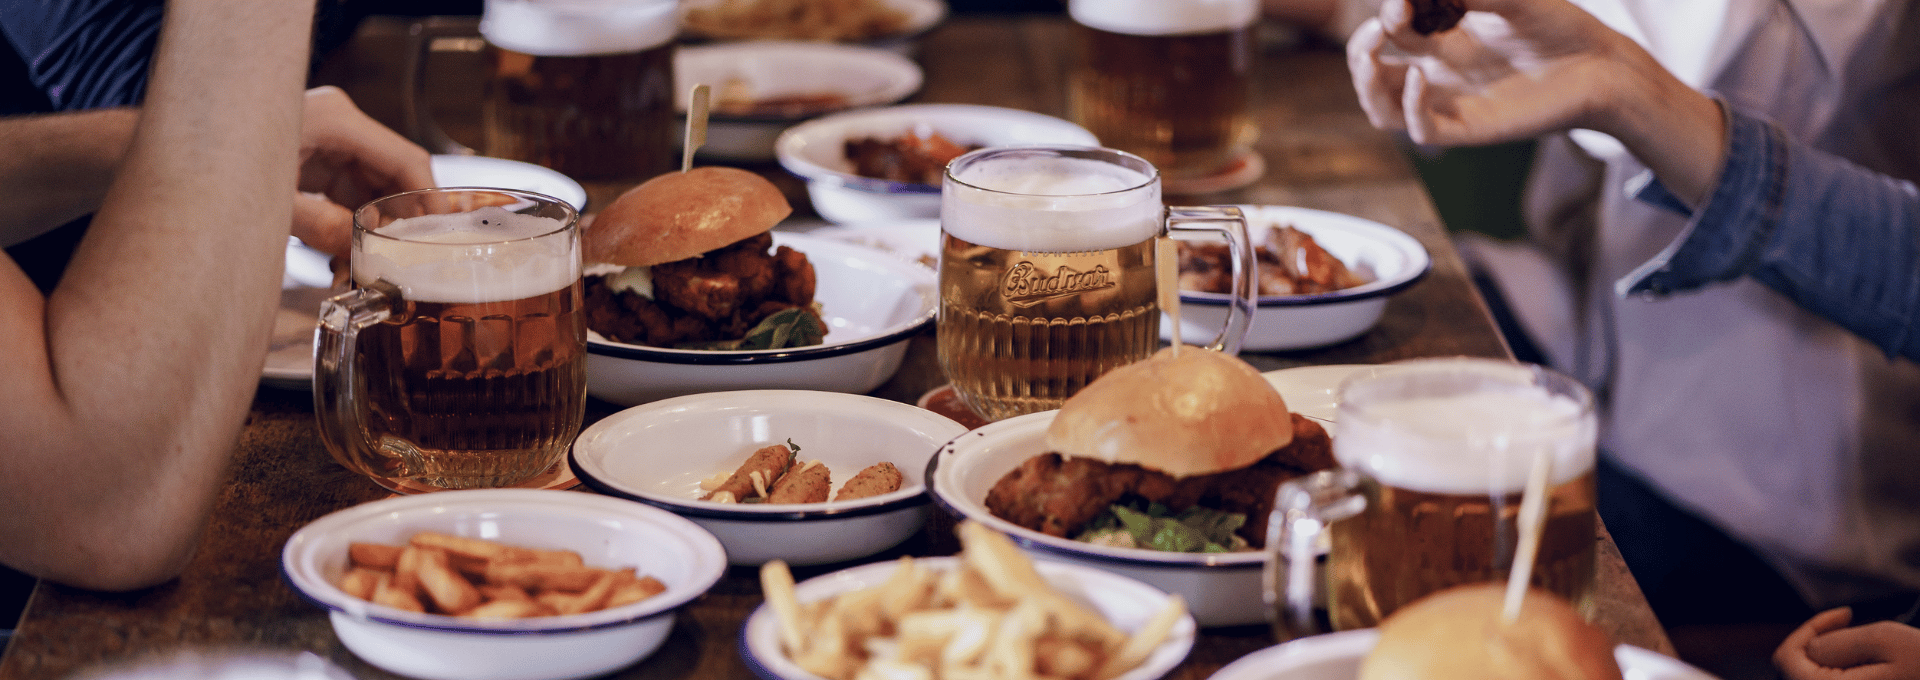 Image d'une table dans un pub où on voit des plats (burgers, frites) accompagnés de belles chopes de bières tchèques blondes provenant de la brasserie BUDWEISER BUDVAR. 